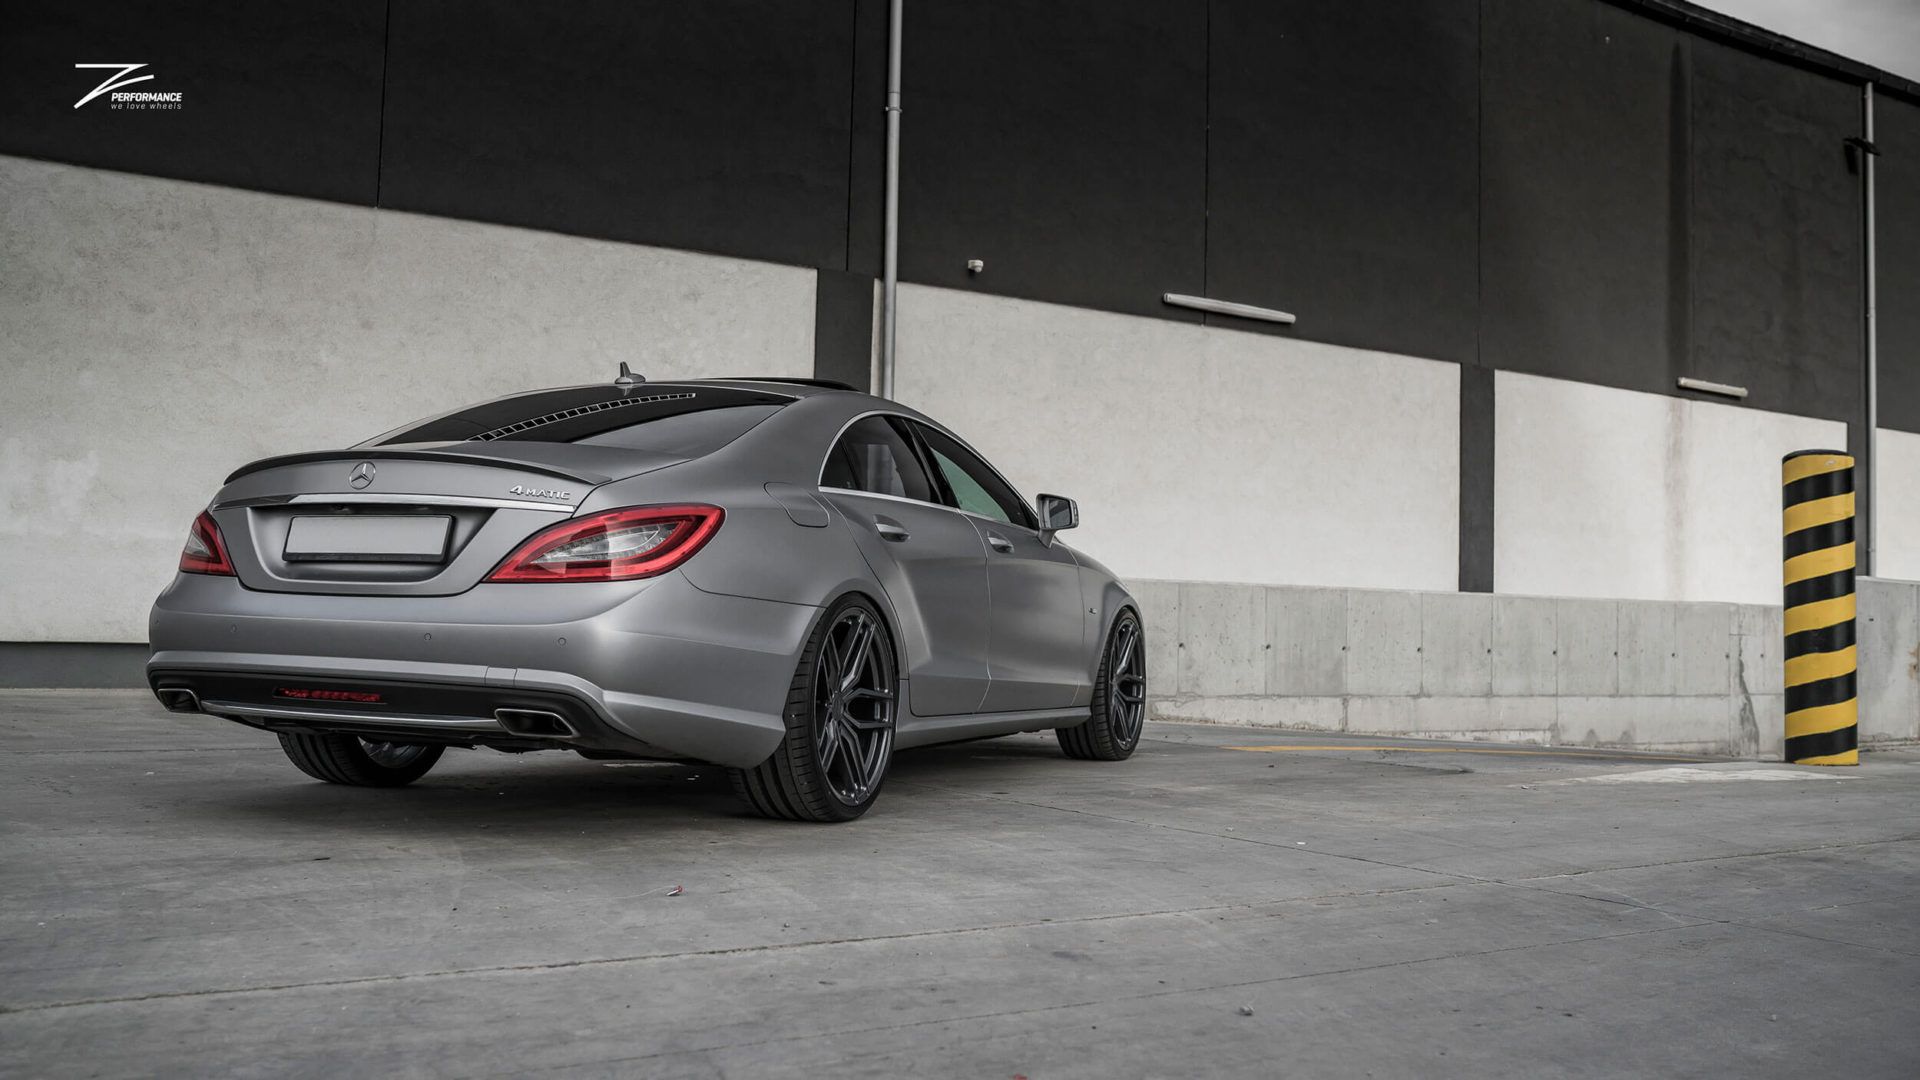 Mercedes-Benz CLS Tuning: Mit Folie und Felgen fein gemachter C218